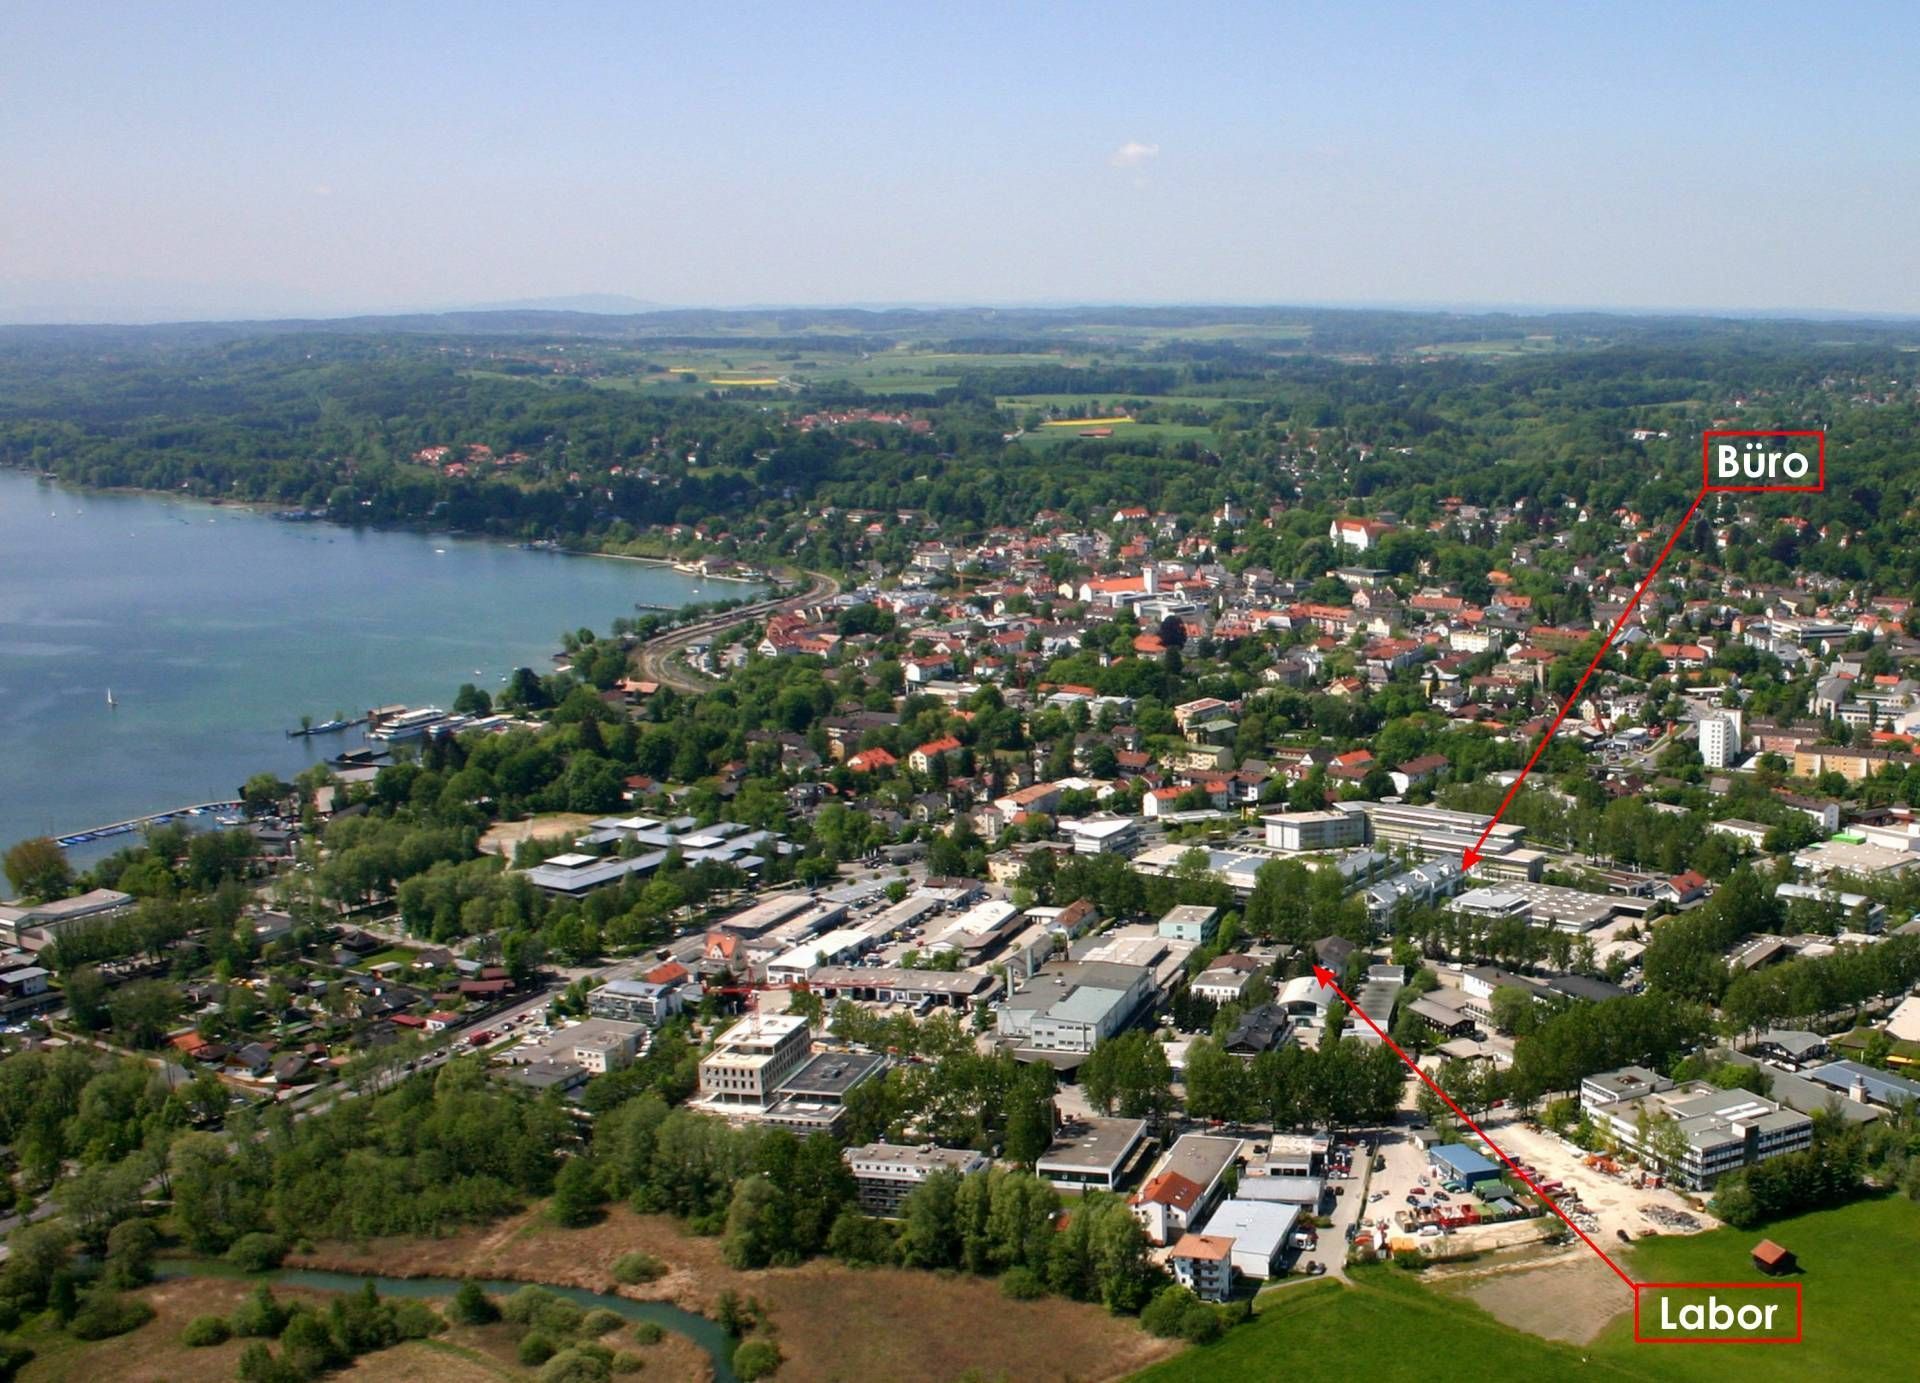 Luftbild von Starnberg, Büro und Labor von GHB sind eingezeichnet